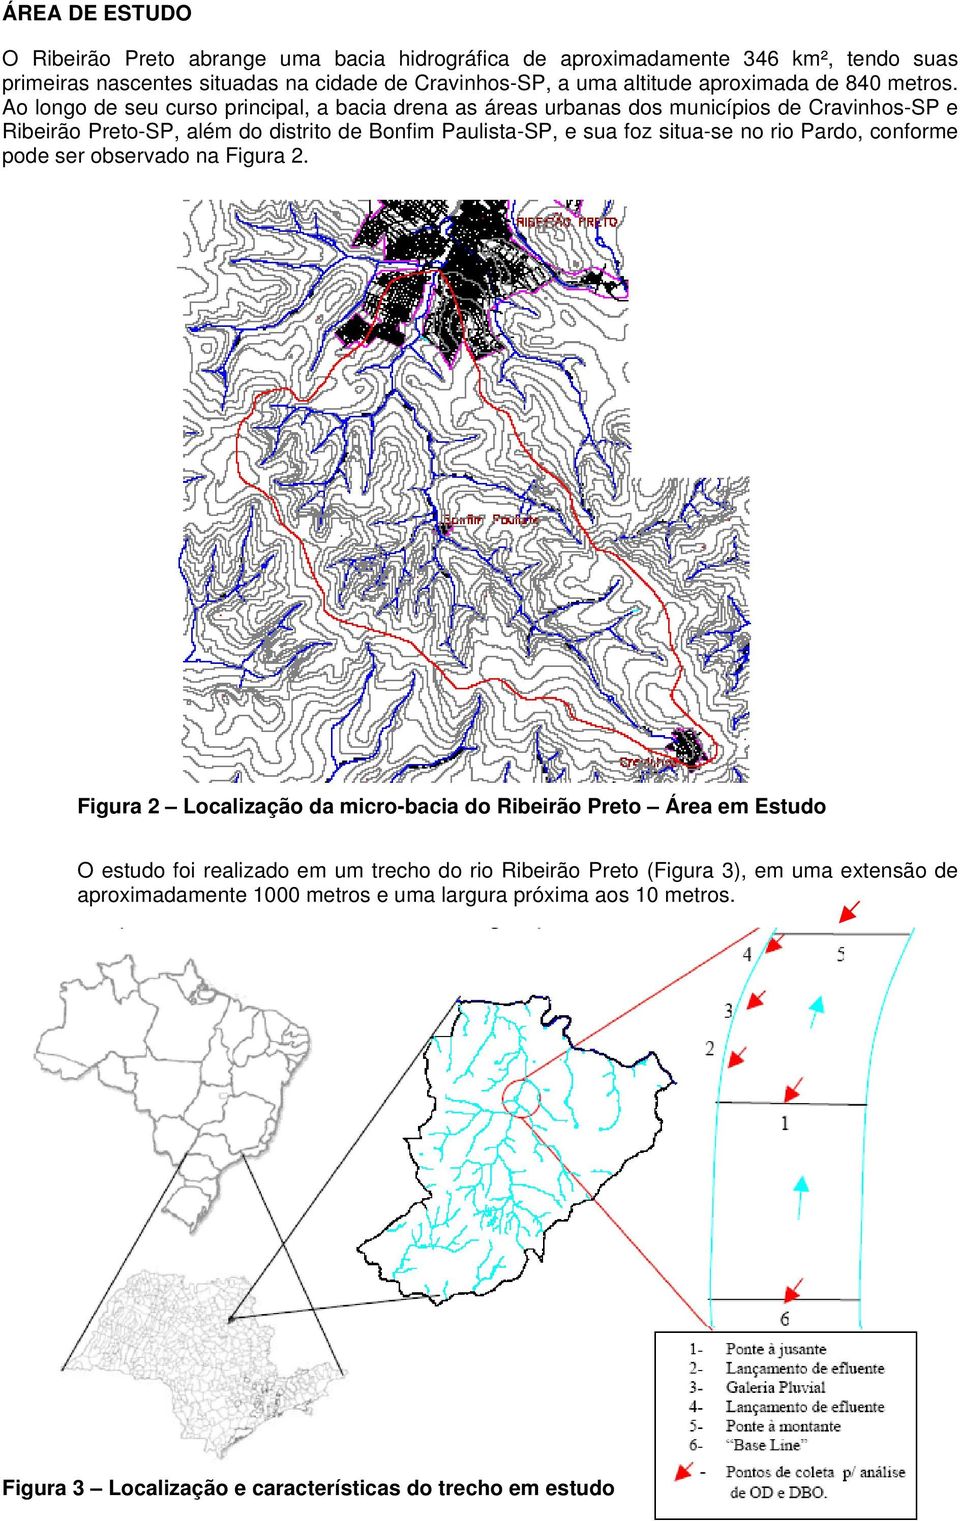 Ao longo de seu curso principal, a bacia drena as áreas urbanas dos municípios de Cravinhos-SP e Ribeirão Preto-SP, além do distrito de Bonfim Paulista-SP, e sua foz situa-se no